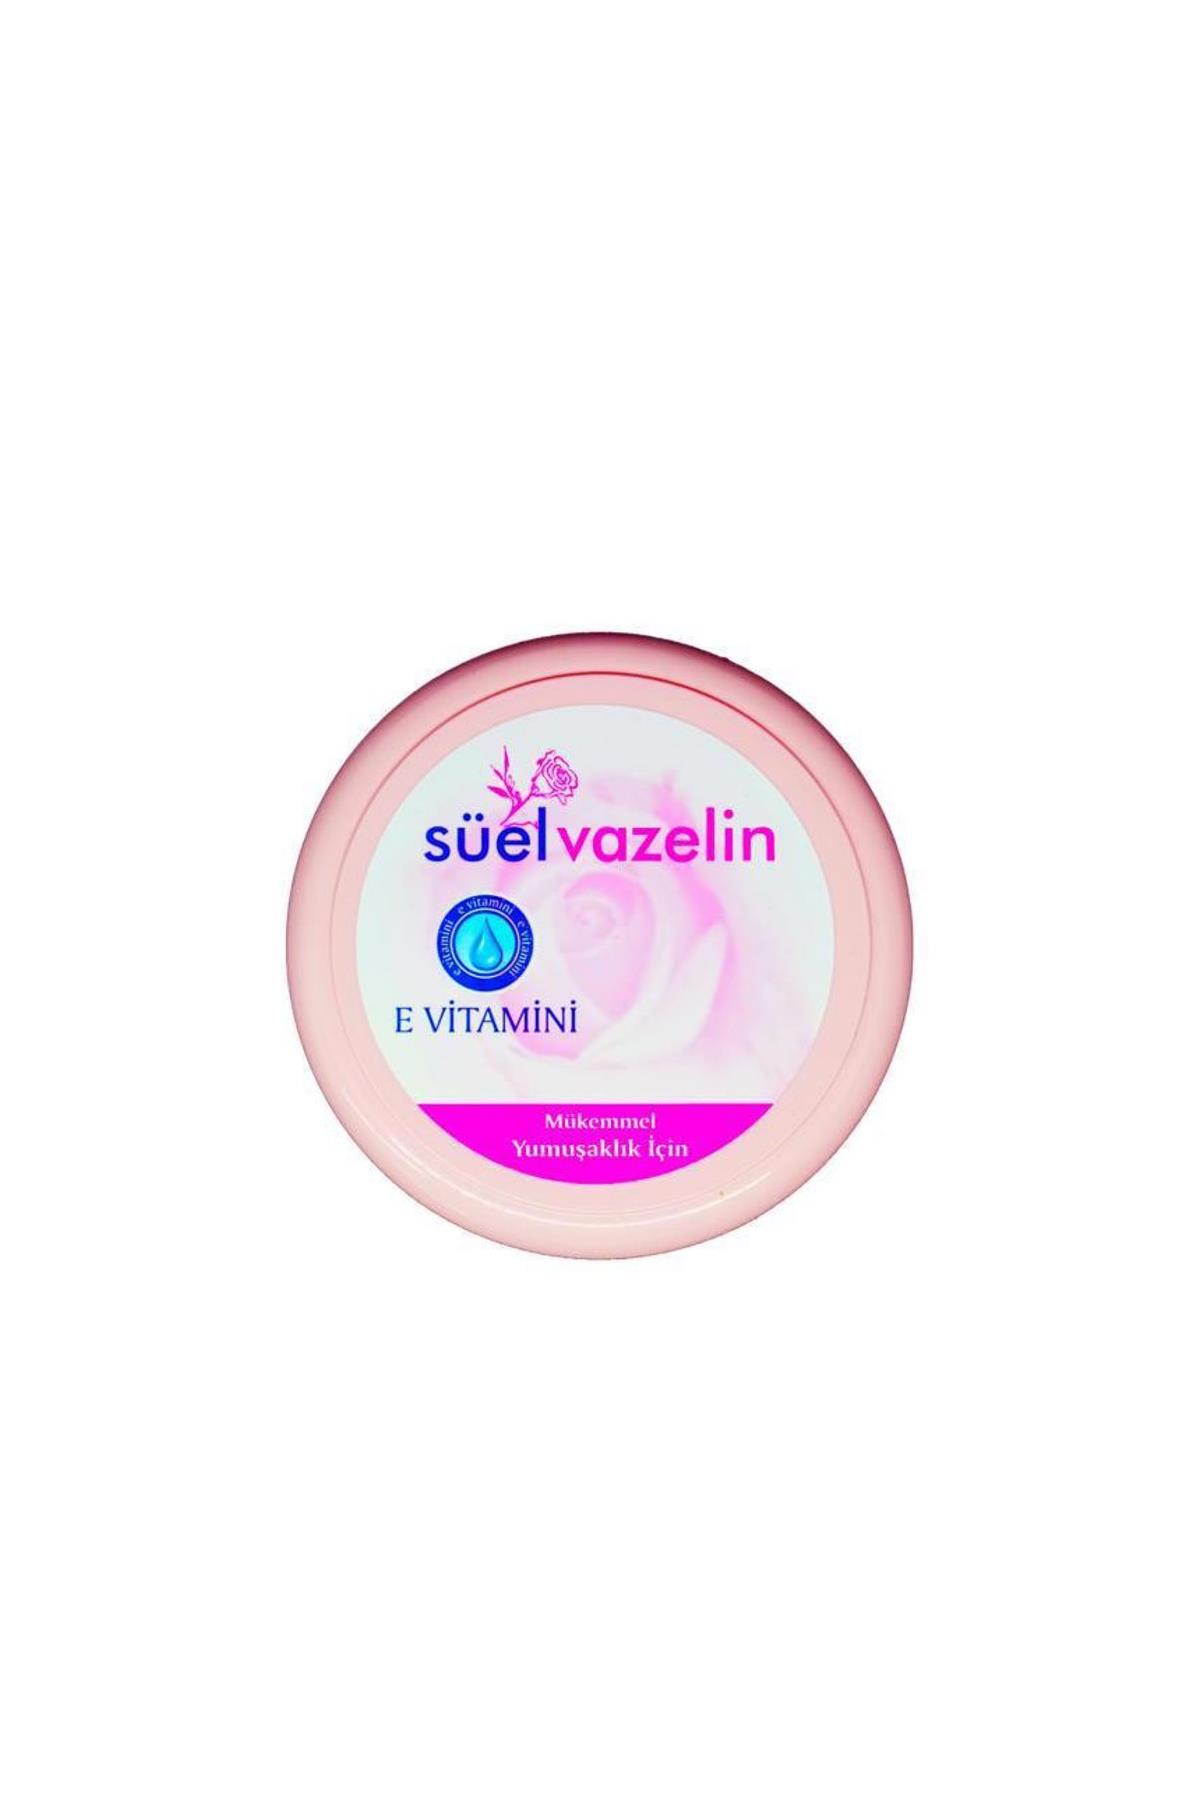 suel-vazelin-e-vitaminli-100-ml-10044.jpg